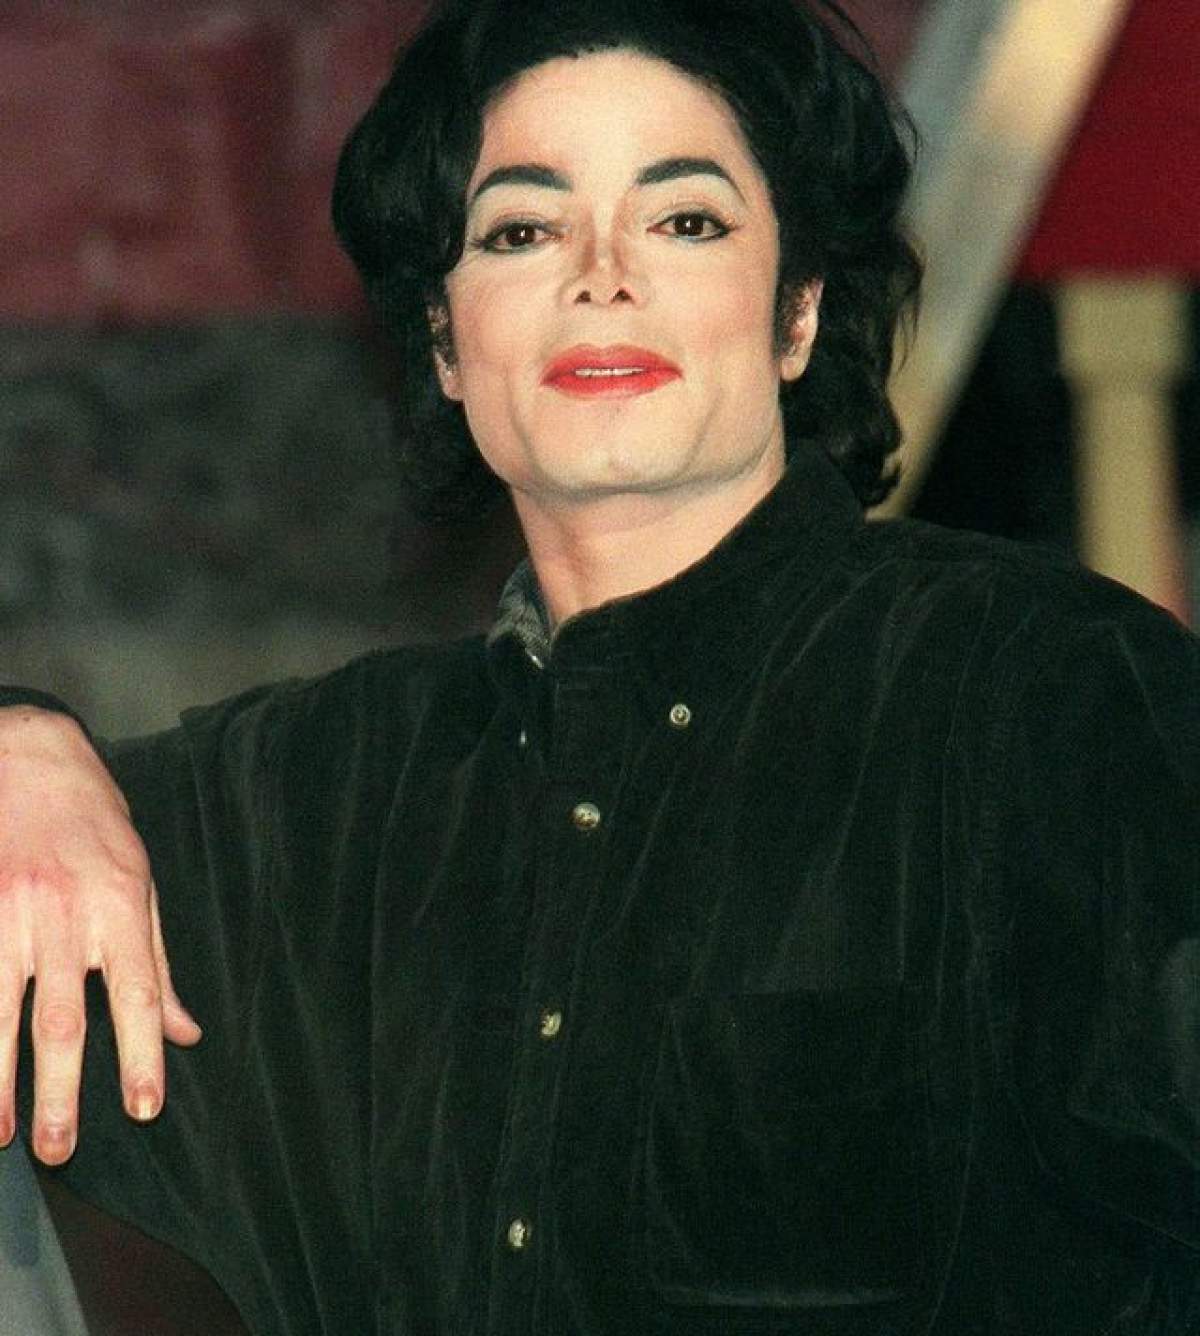 FOTO Michael Jackson şi-ar fi dorit să-l vadă aşa! Cum l-au surprins paparazzii pe fiul său la plajă